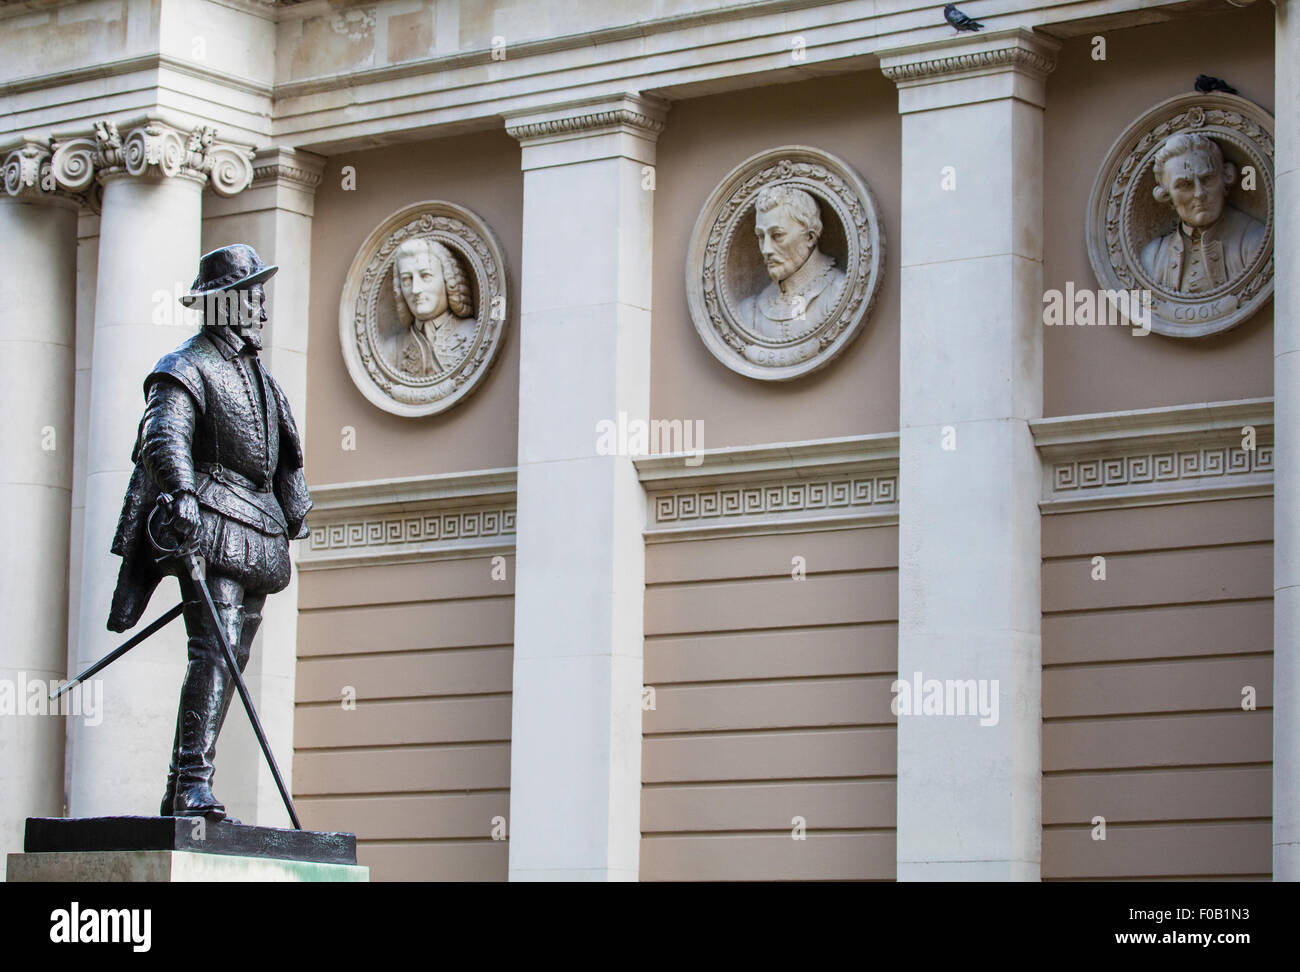 Statue de Sir Walter Raleigh avec des bustes de célèbres figures de la Marine royale à l'arrière-plan. Banque D'Images